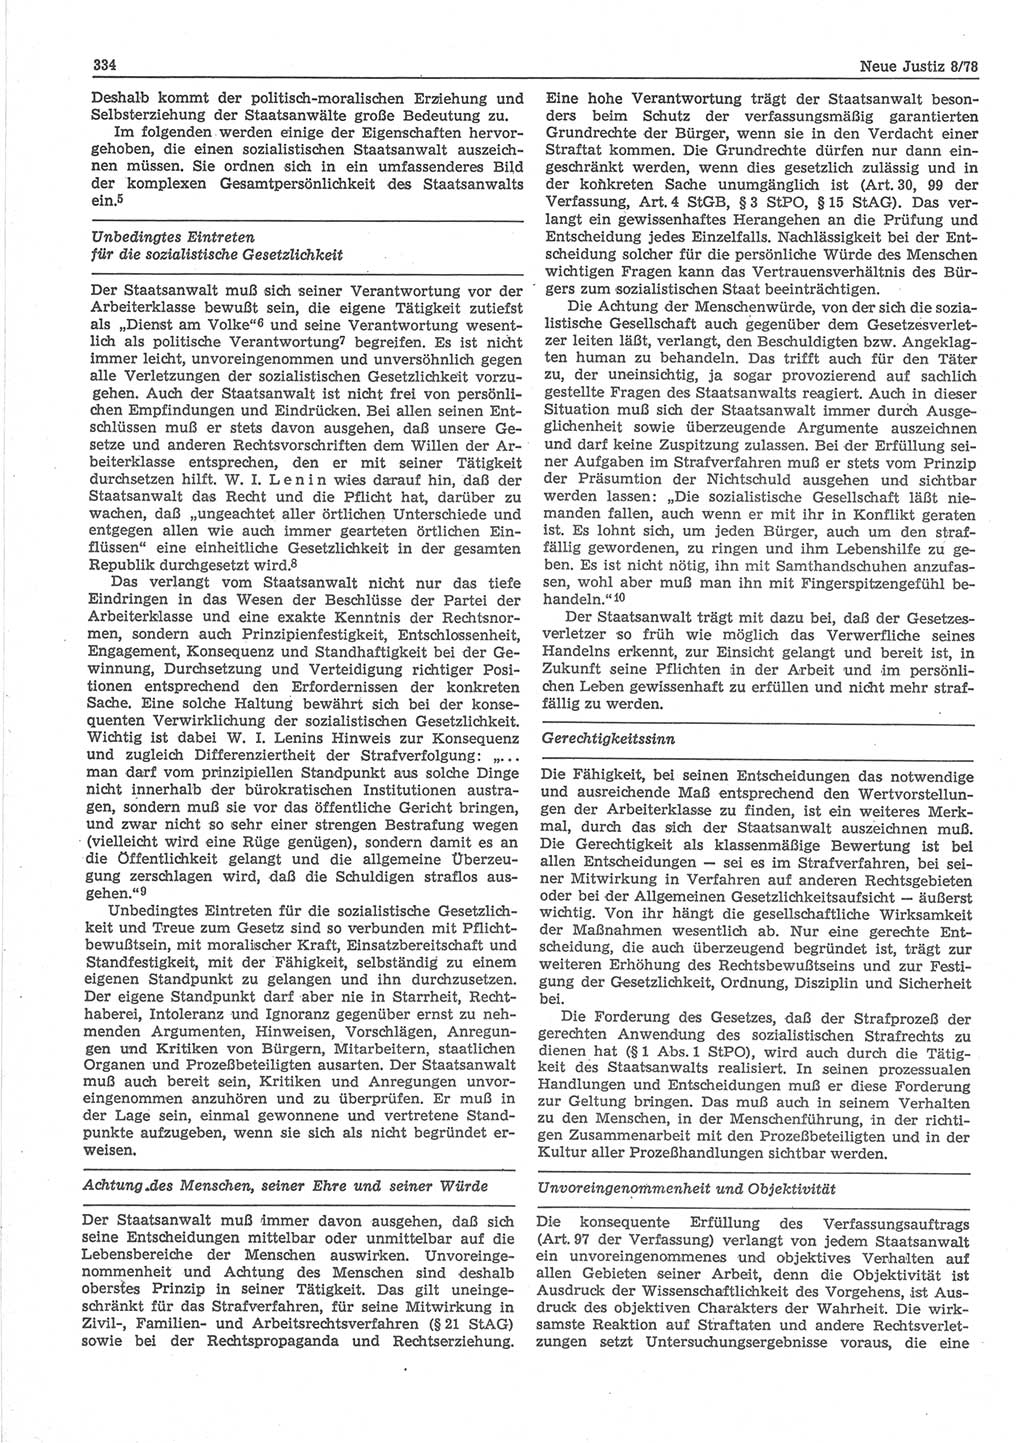 Neue Justiz (NJ), Zeitschrift für sozialistisches Recht und Gesetzlichkeit [Deutsche Demokratische Republik (DDR)], 32. Jahrgang 1978, Seite 334 (NJ DDR 1978, S. 334)